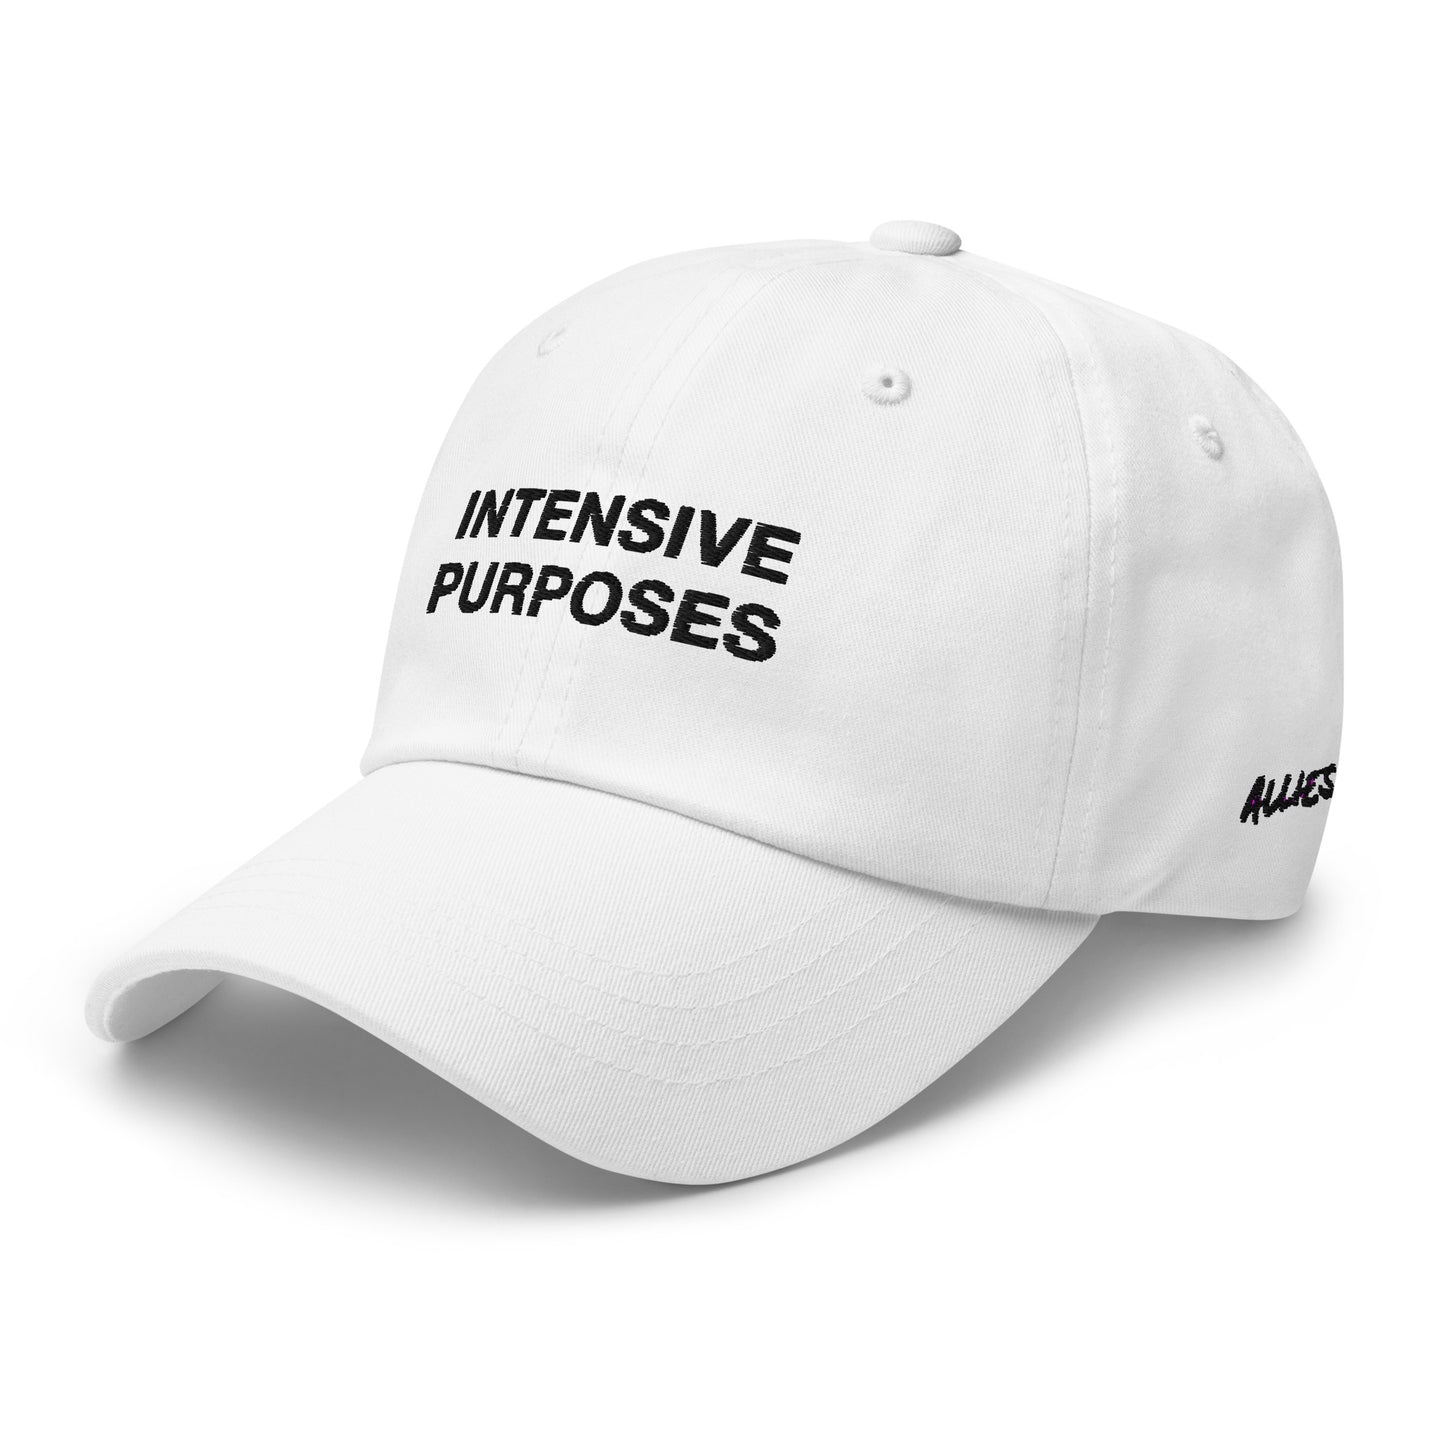 Intensive Purposes Hat